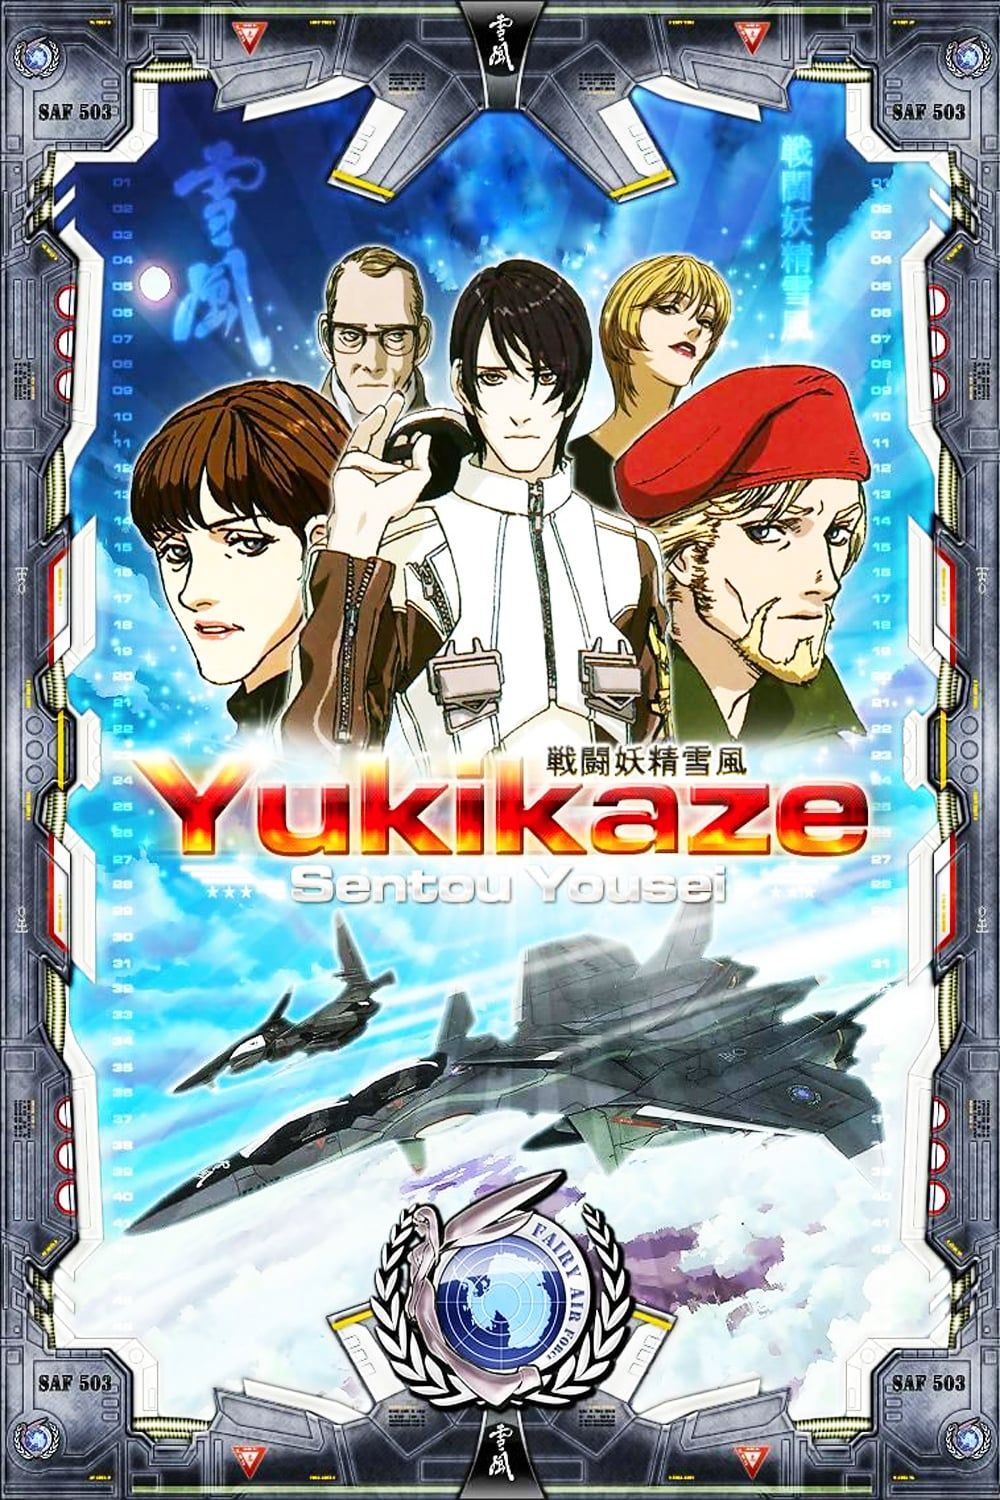 [Full Series] Sentou Yousei Yukikaze (OVA) (Sub)